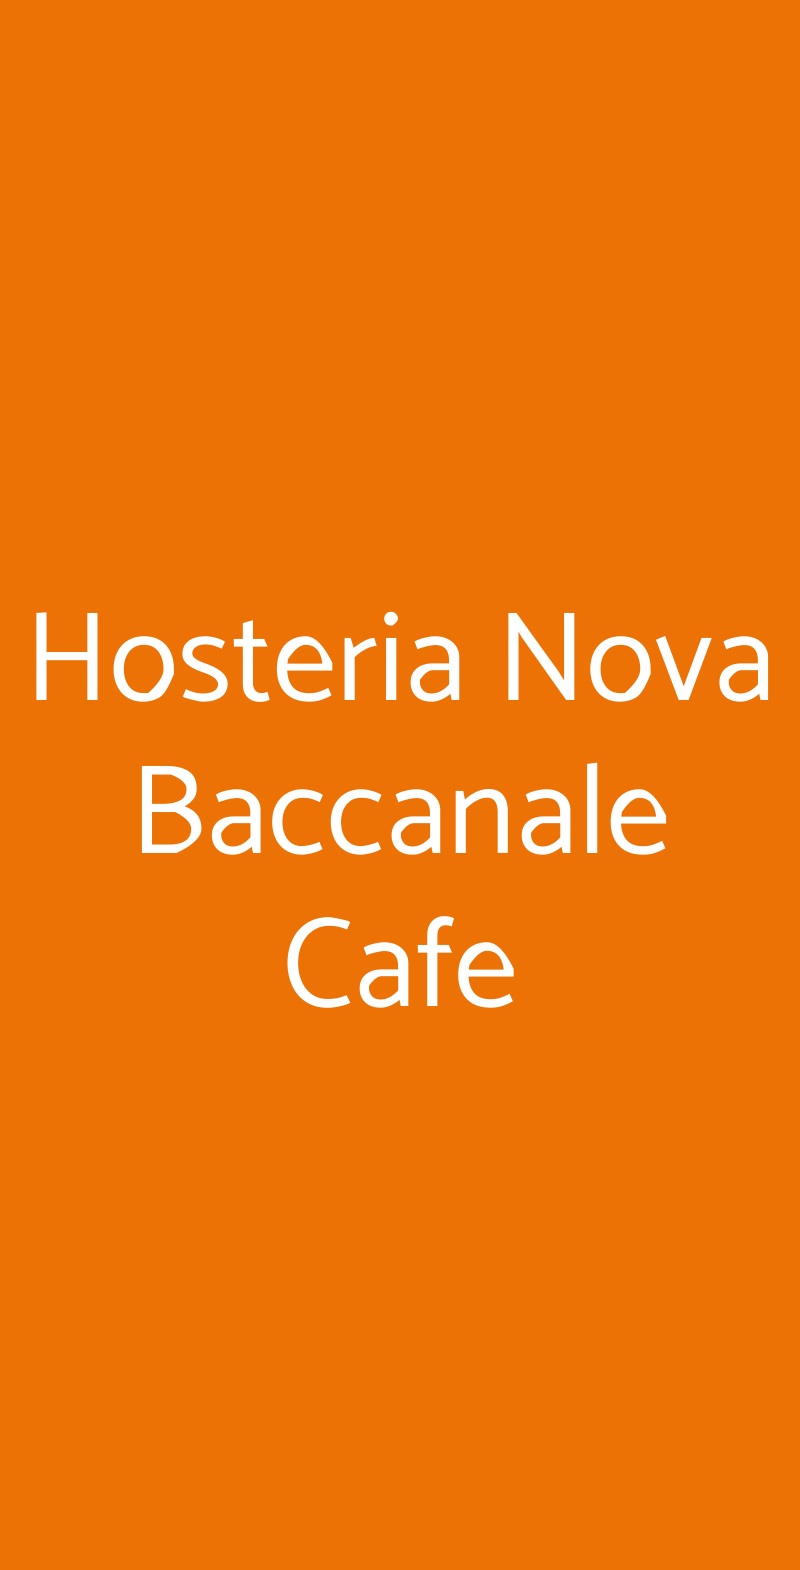 Hosteria Nova Baccanale Cafe Assisi menù 1 pagina